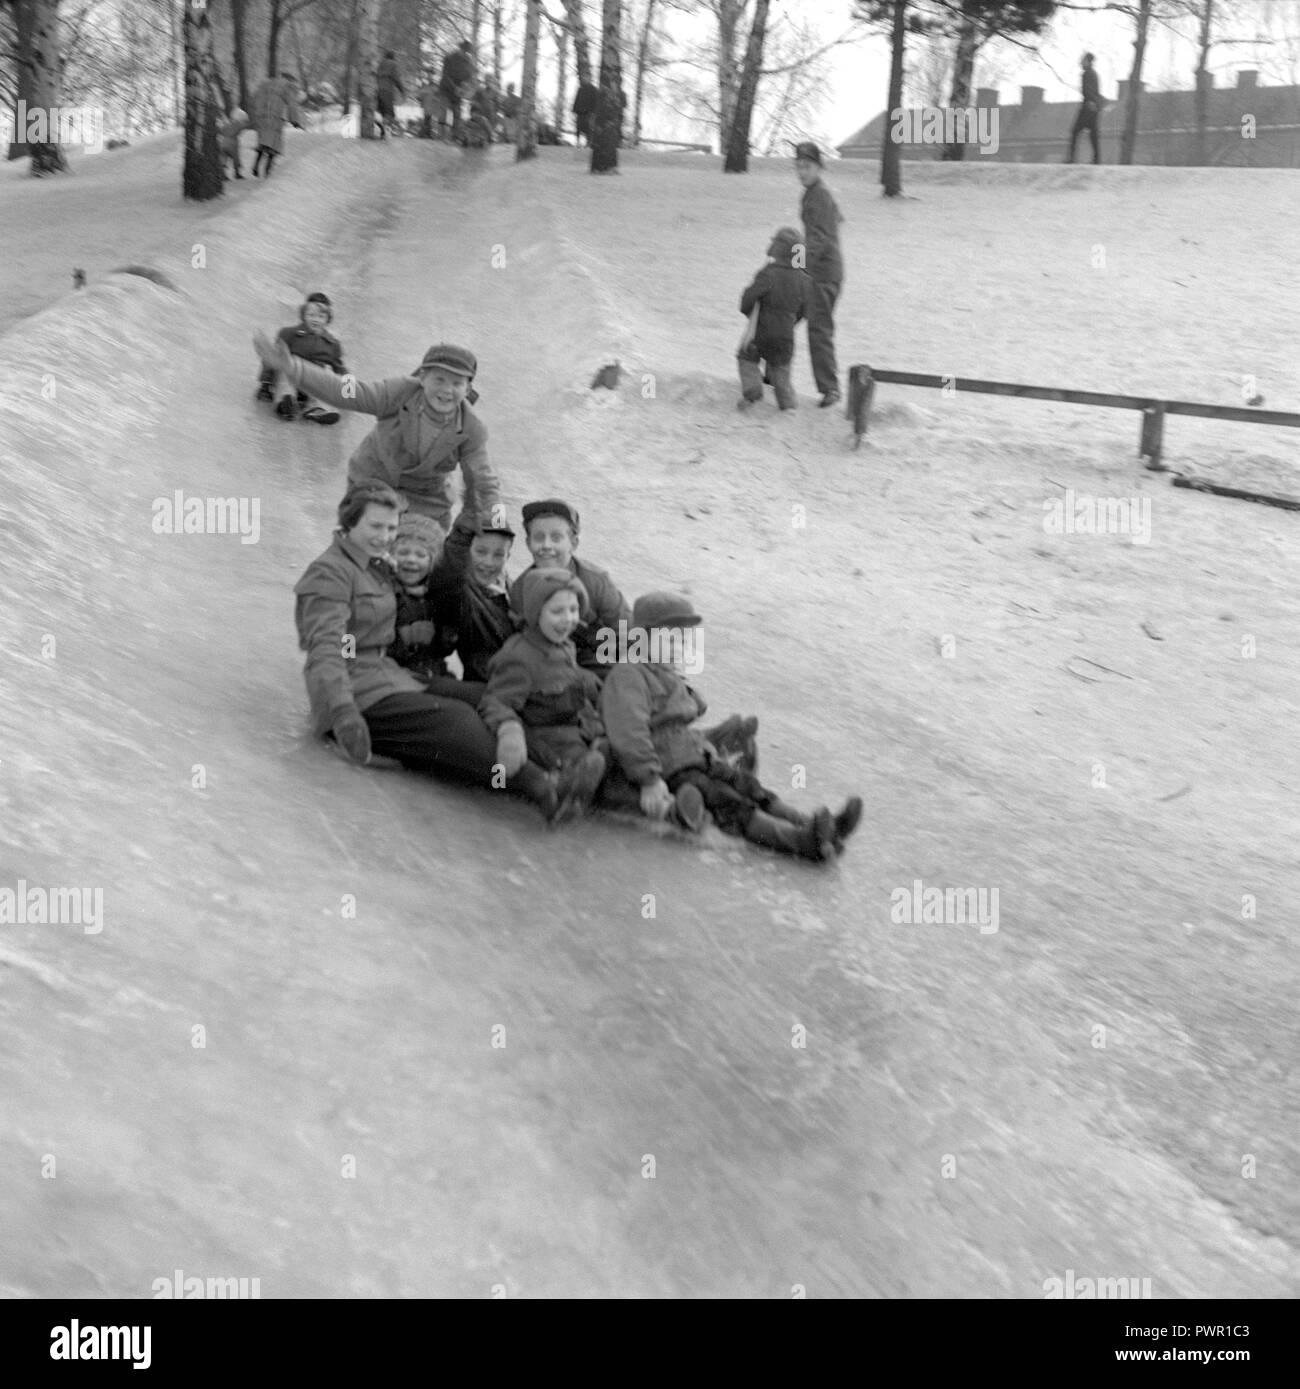 L'hiver dans les années 1950. Des enfants jouent dans un parc à Stockholm. Le glisser sur la colline glacée ensemble et avoir du plaisir. Suède 1951. Ref 1609 Banque D'Images